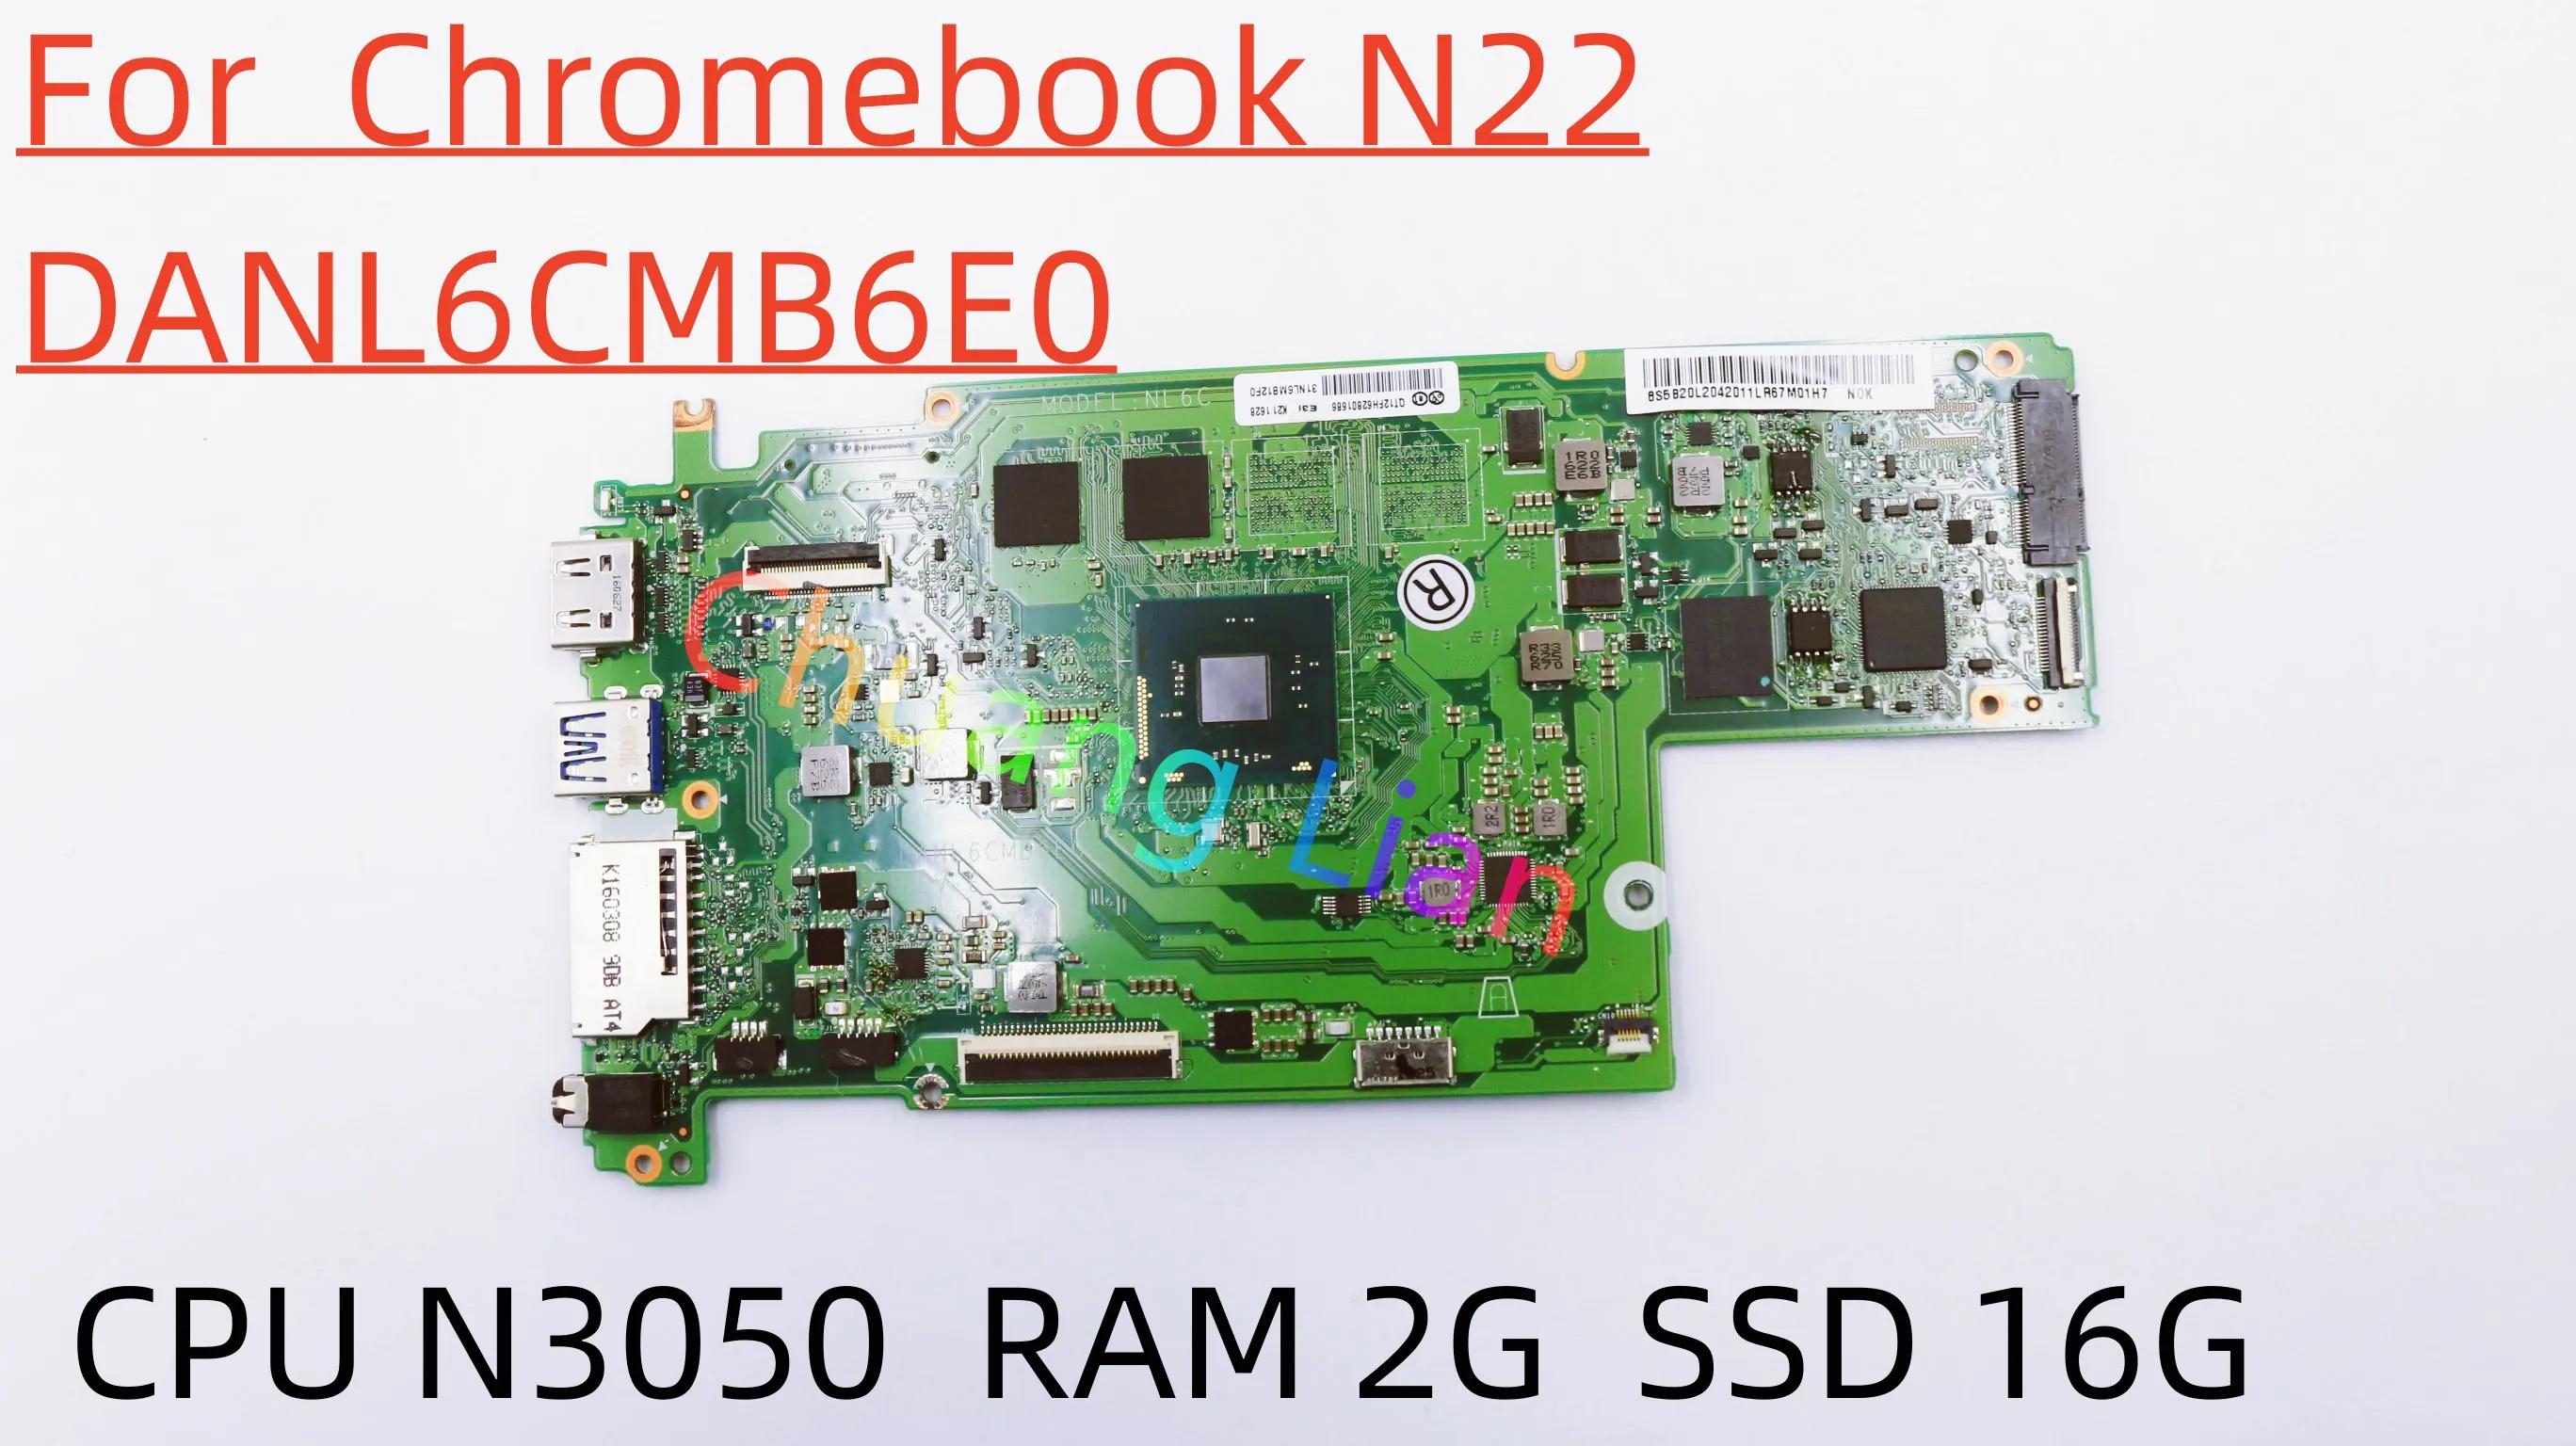  ũҺ N22 Ʈ  DANL6CMB6E0, CPU N3050 + 2G RAM + 16G SSD, FRU 5B20L20420 100%,  ׽Ʈ Ϸ